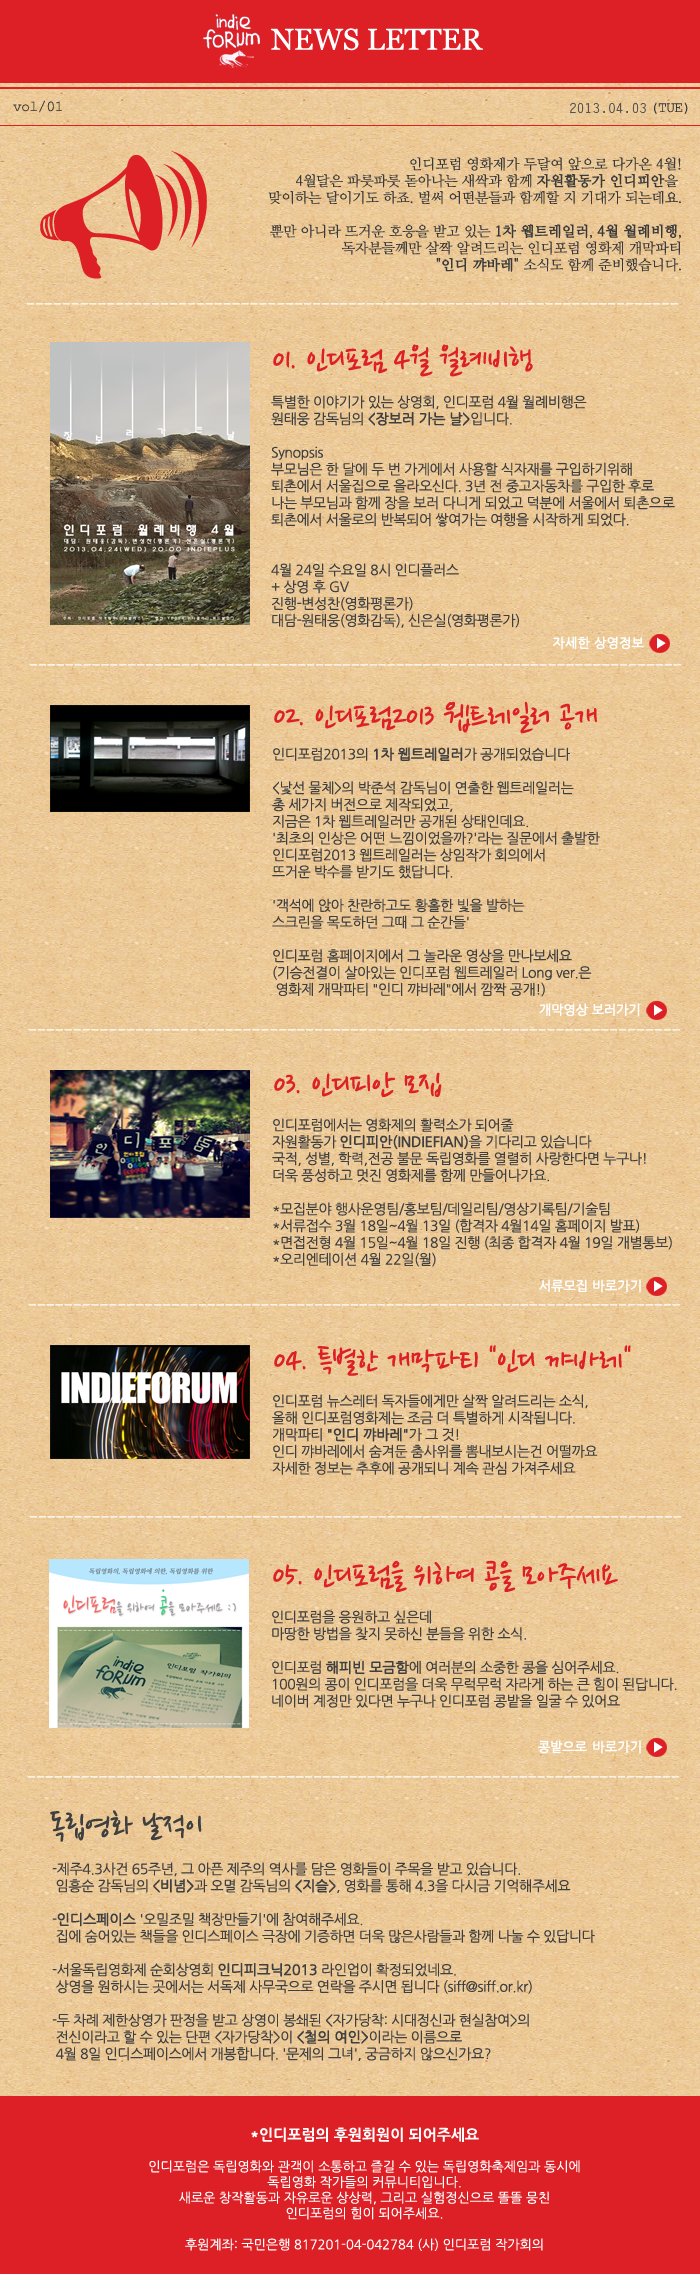 indieforum2013_newsletter_1.png